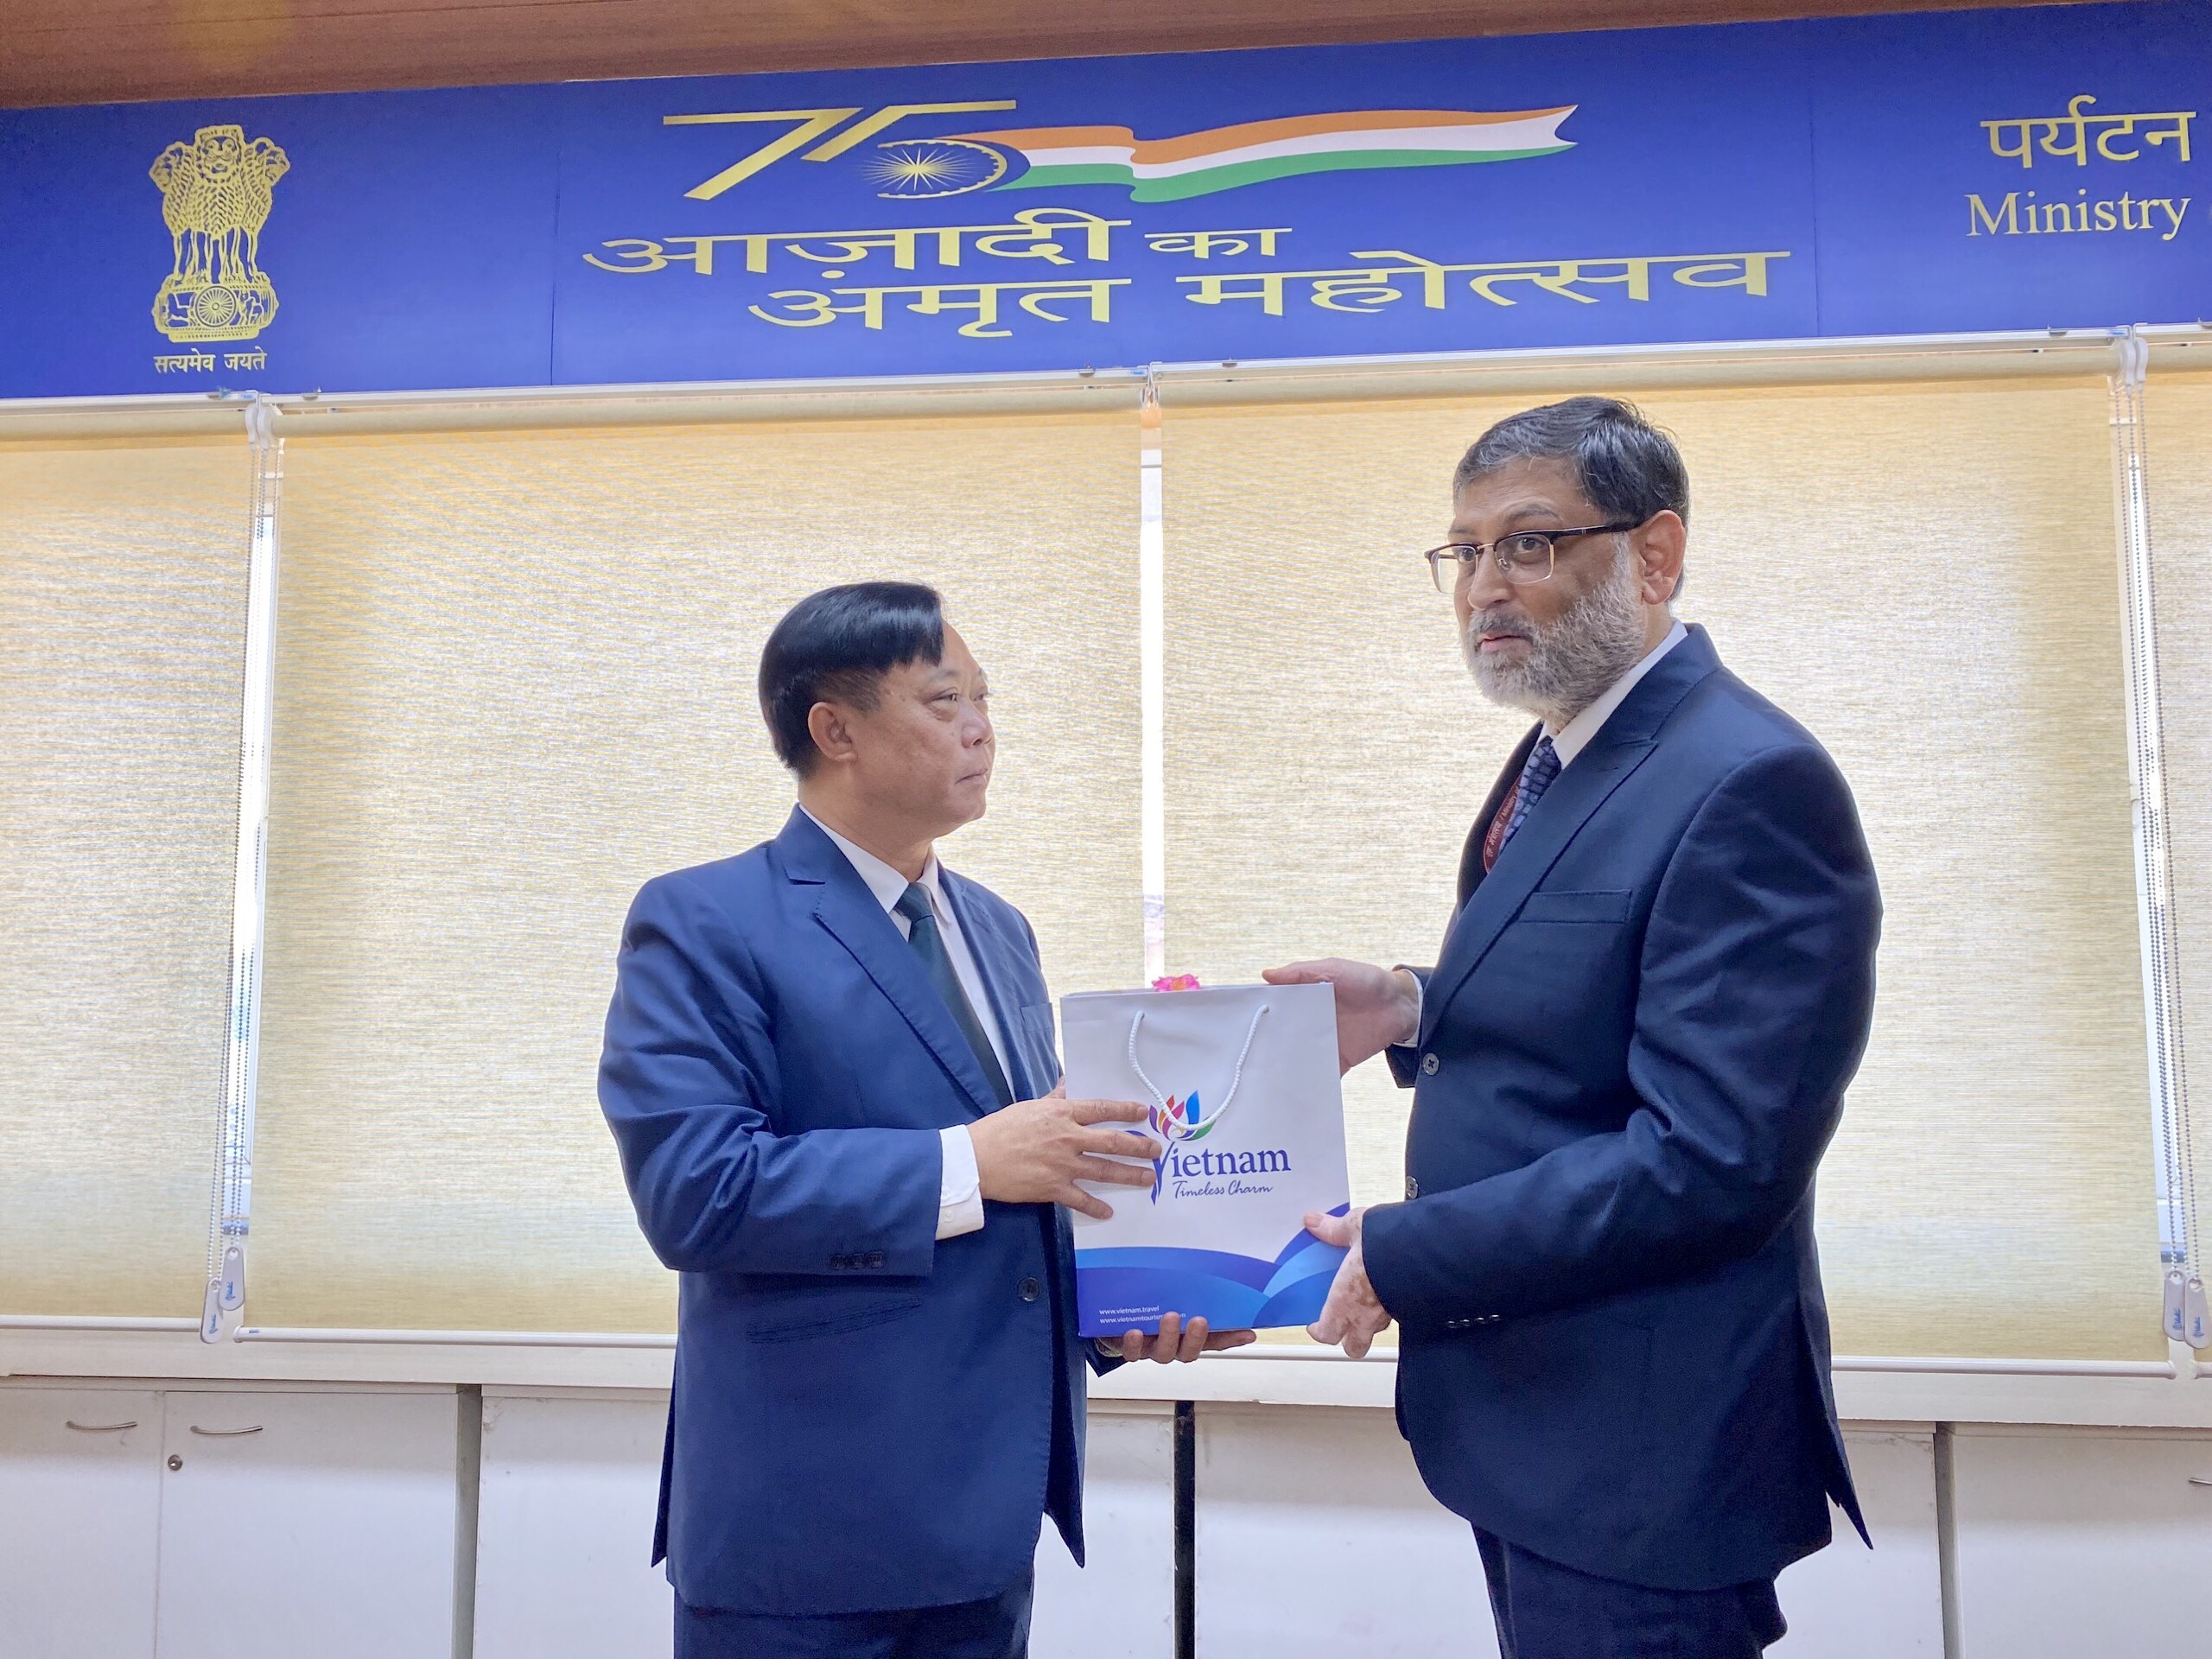  Phó Tổng cục trưởng TCDL Phạm Văn Thuỷ tặng quà lưu niệm cho ông Shri Gyan Bhushan, Cố vấn kinh tế cấp cao, Bộ Du lịch Ấn Độ